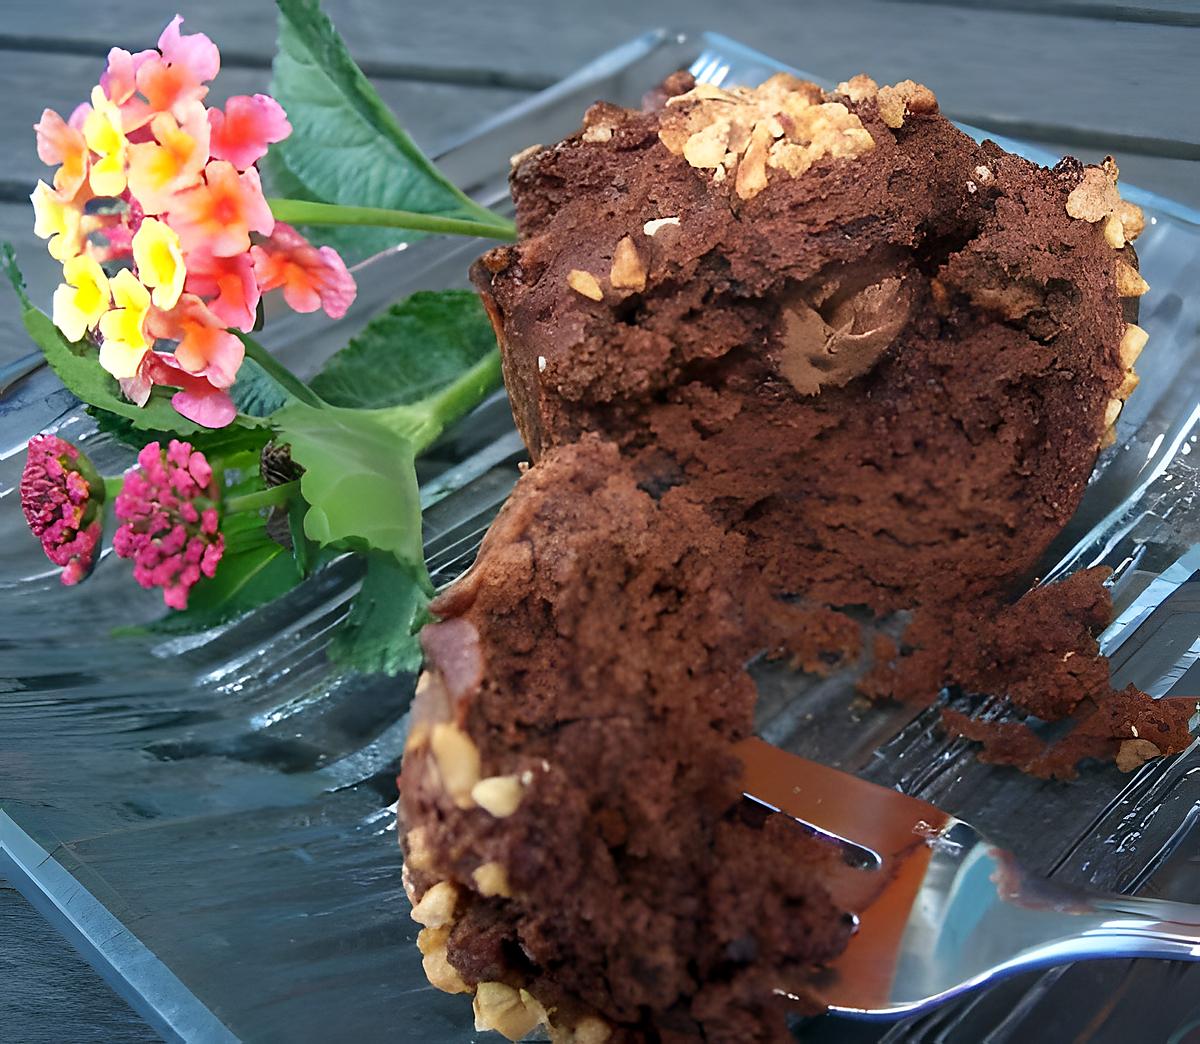 recette Muffins chocolat-noisettes coeur praliné